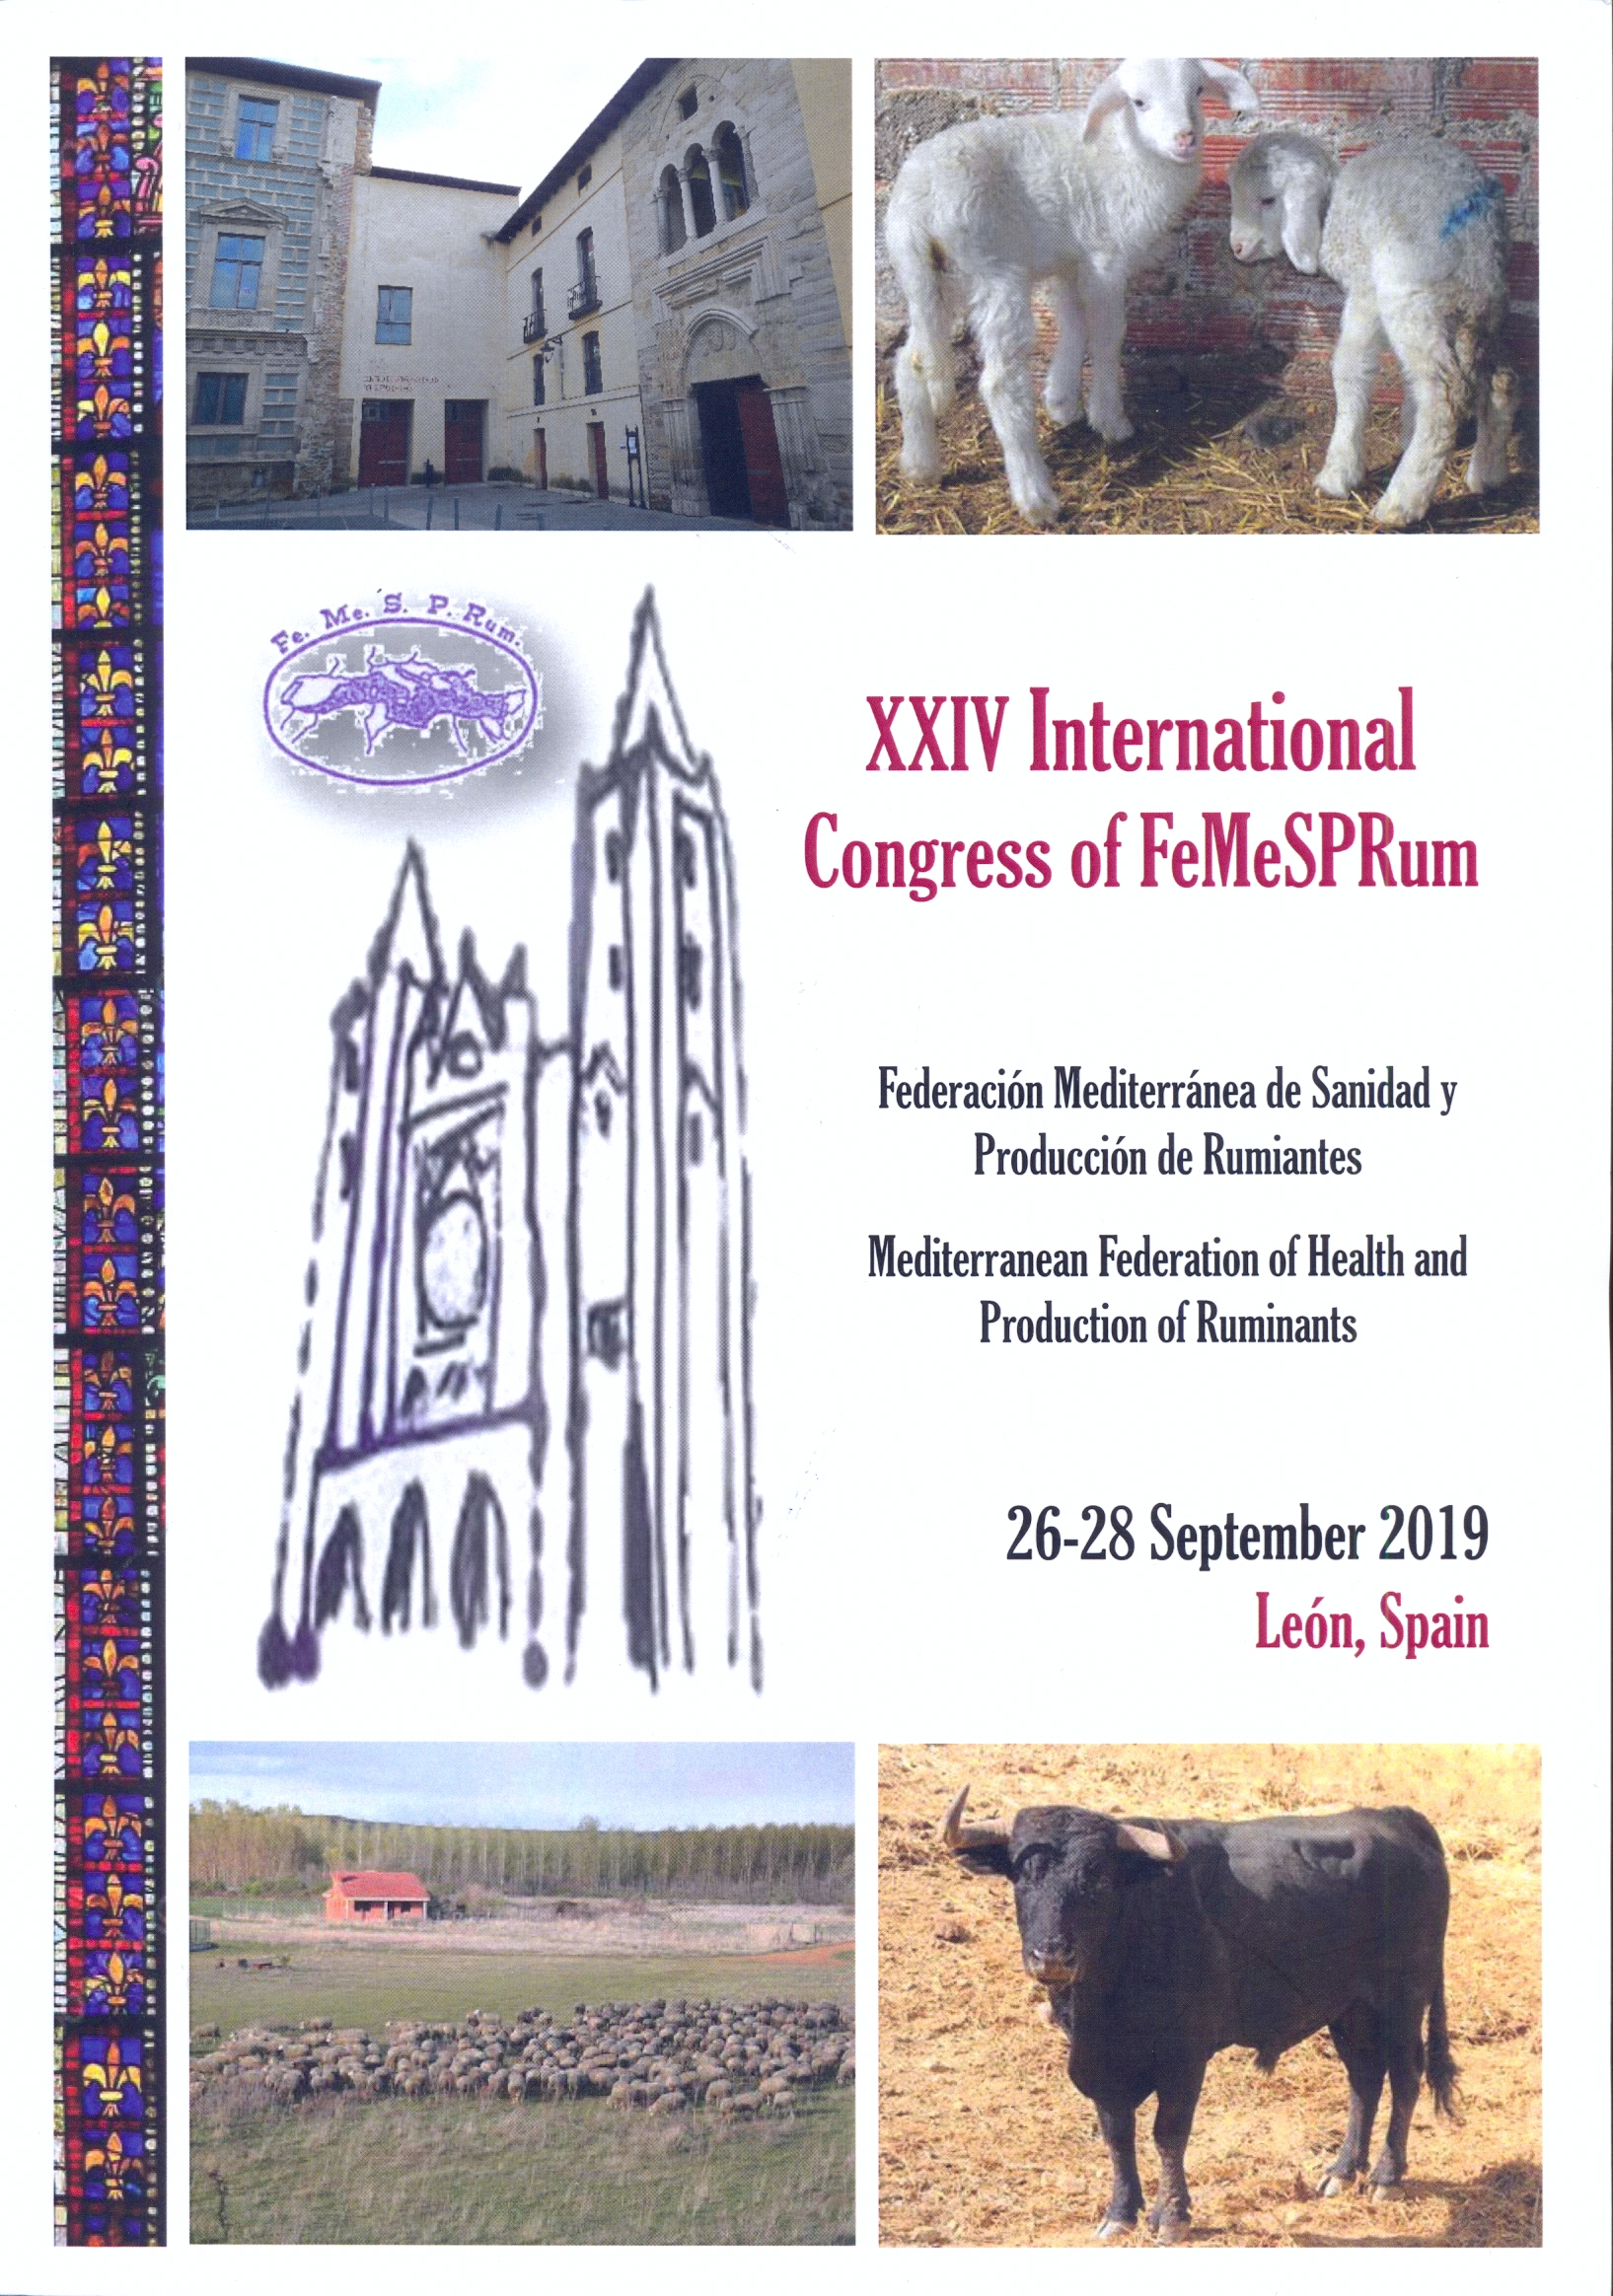 Imagen de portada del libro Actas del XXIV Congreso Internacional de la Federación Mediterránea de Sanidad y Producción de Rumiantes (FeMeSPRum)